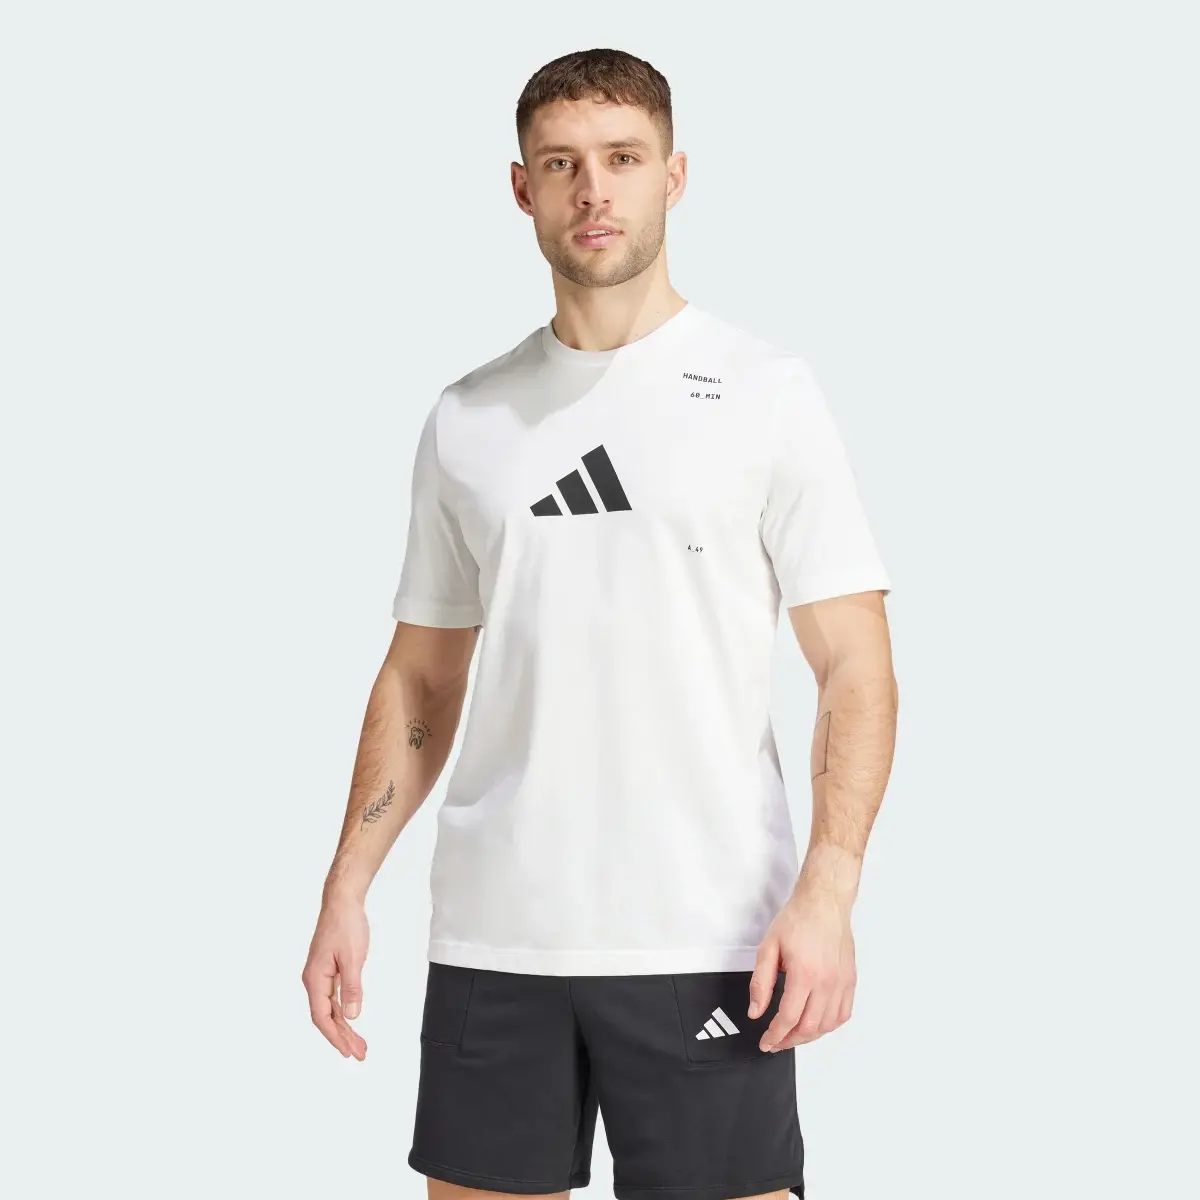 Adidas T-shirt graphique Handball Category. 2